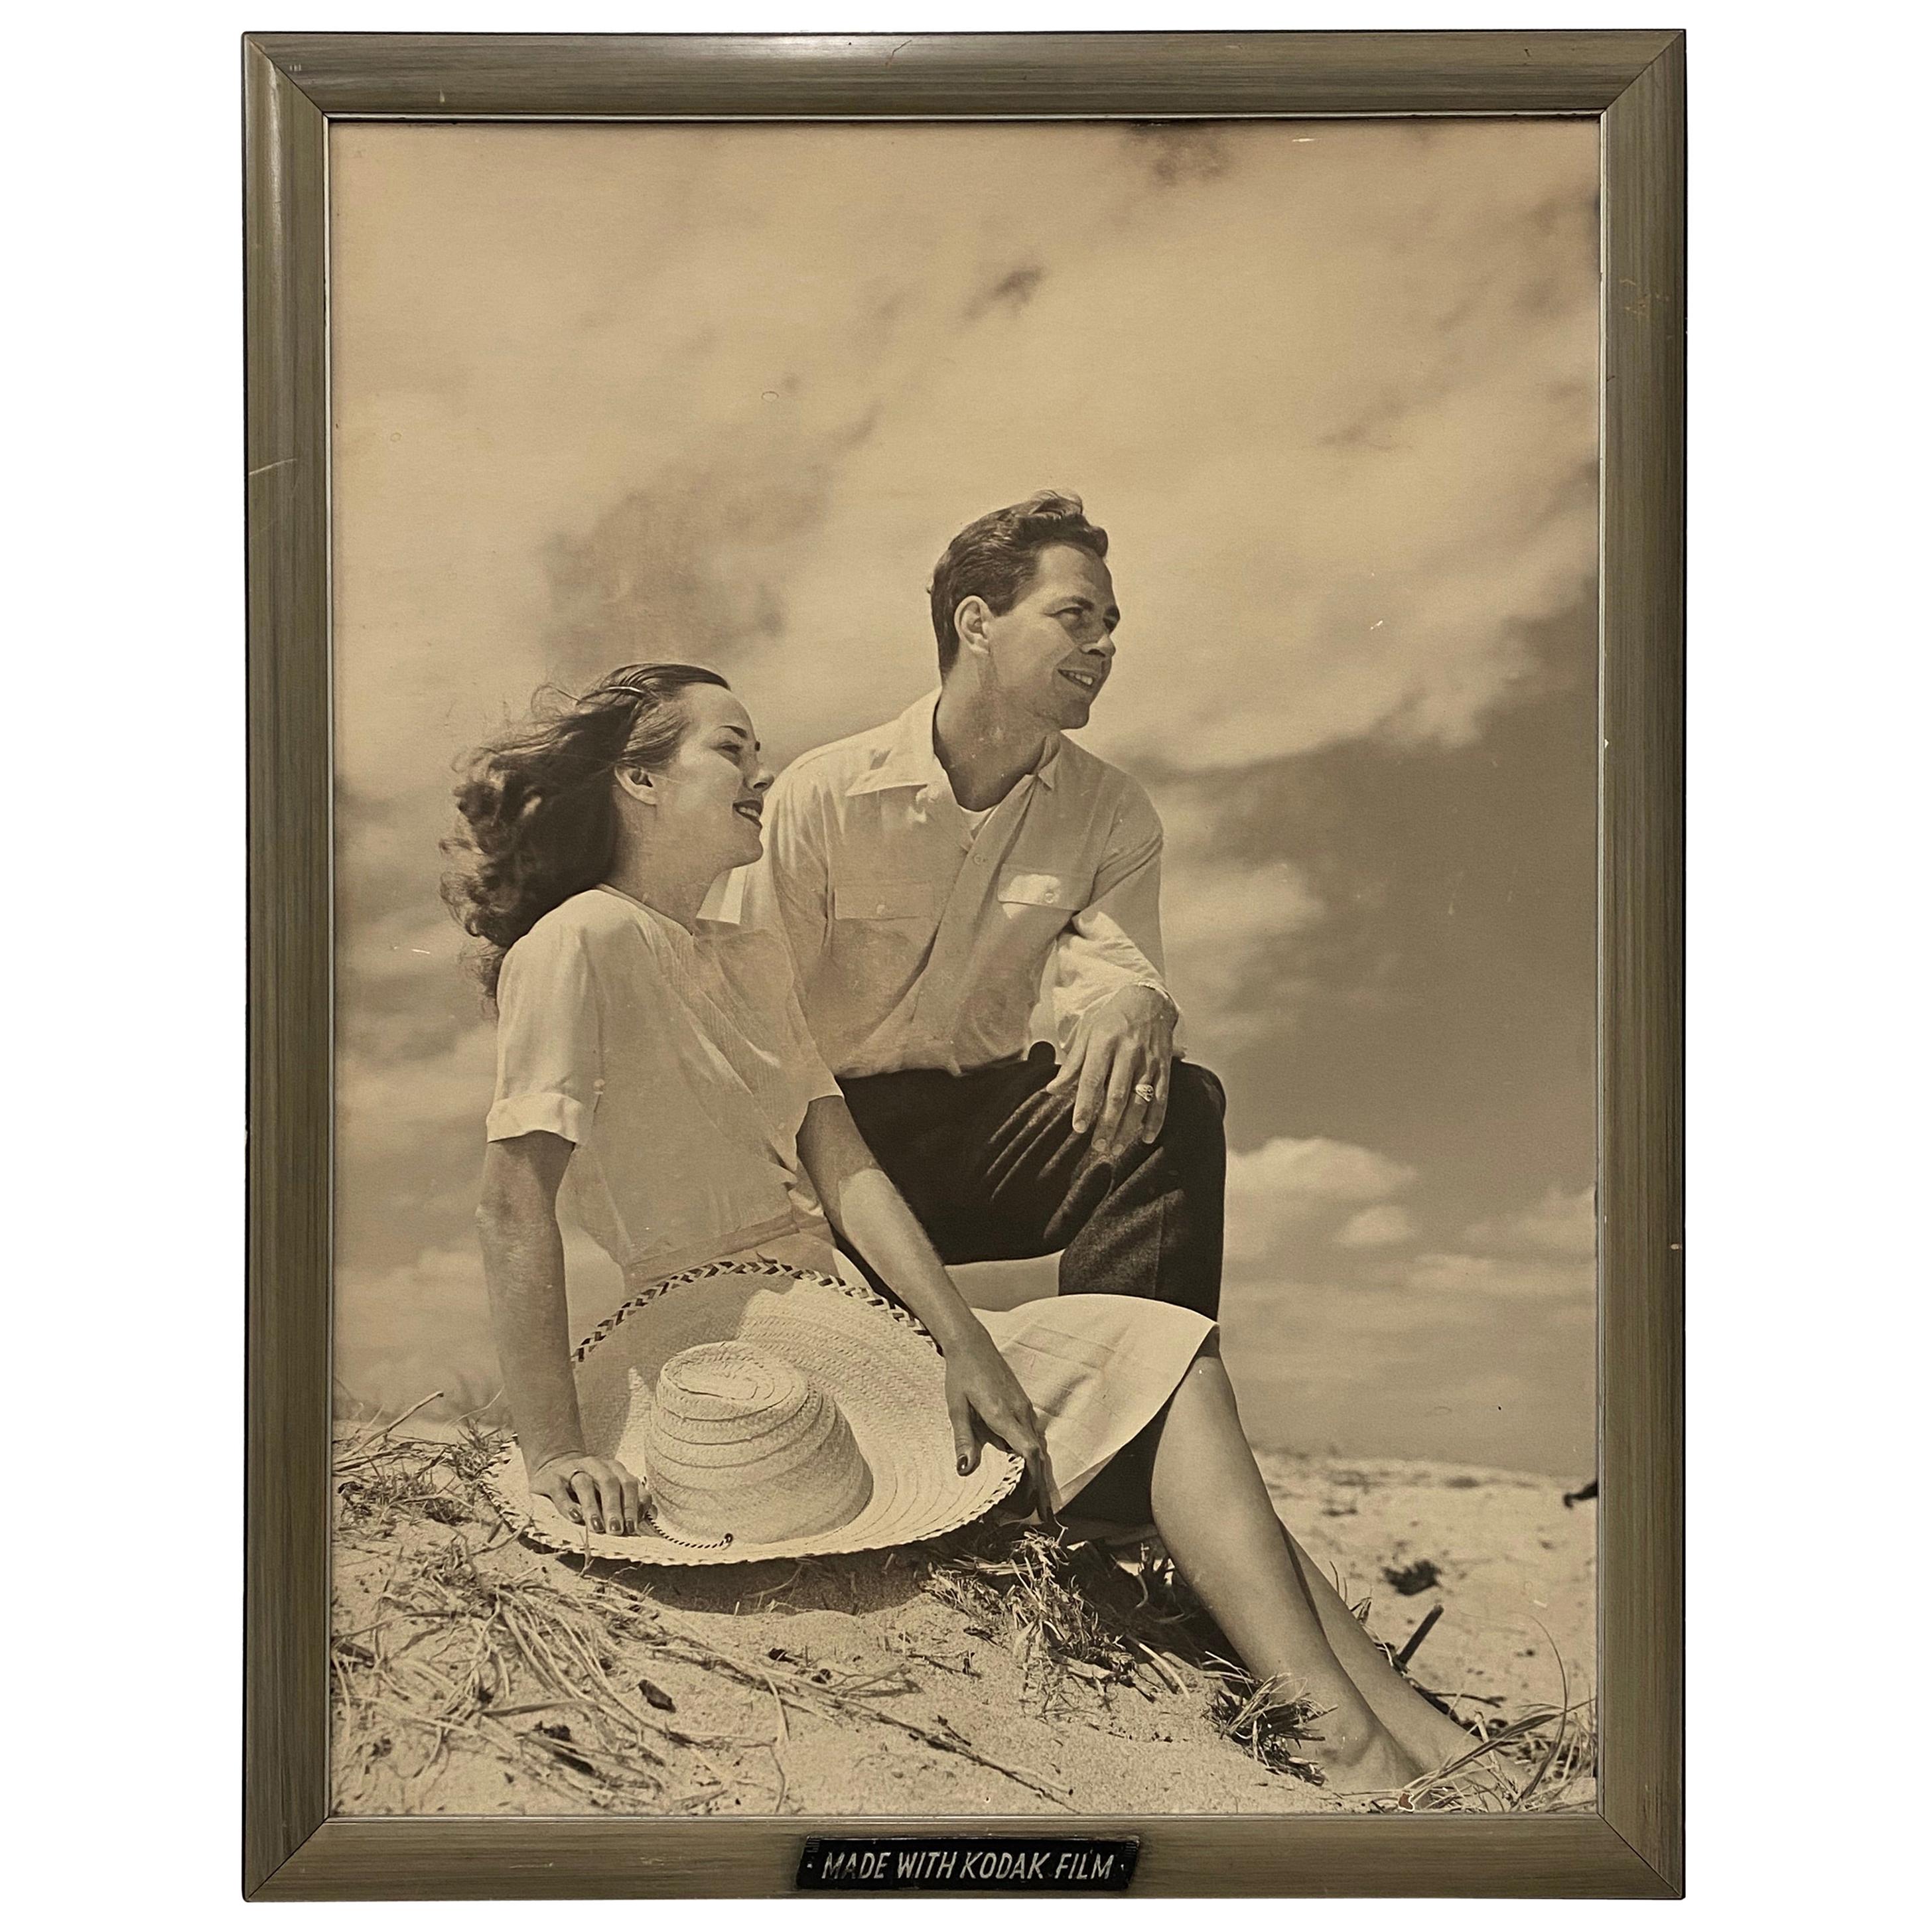 Affiche rétro à grande échelle du « Kodak Film », vers 1950